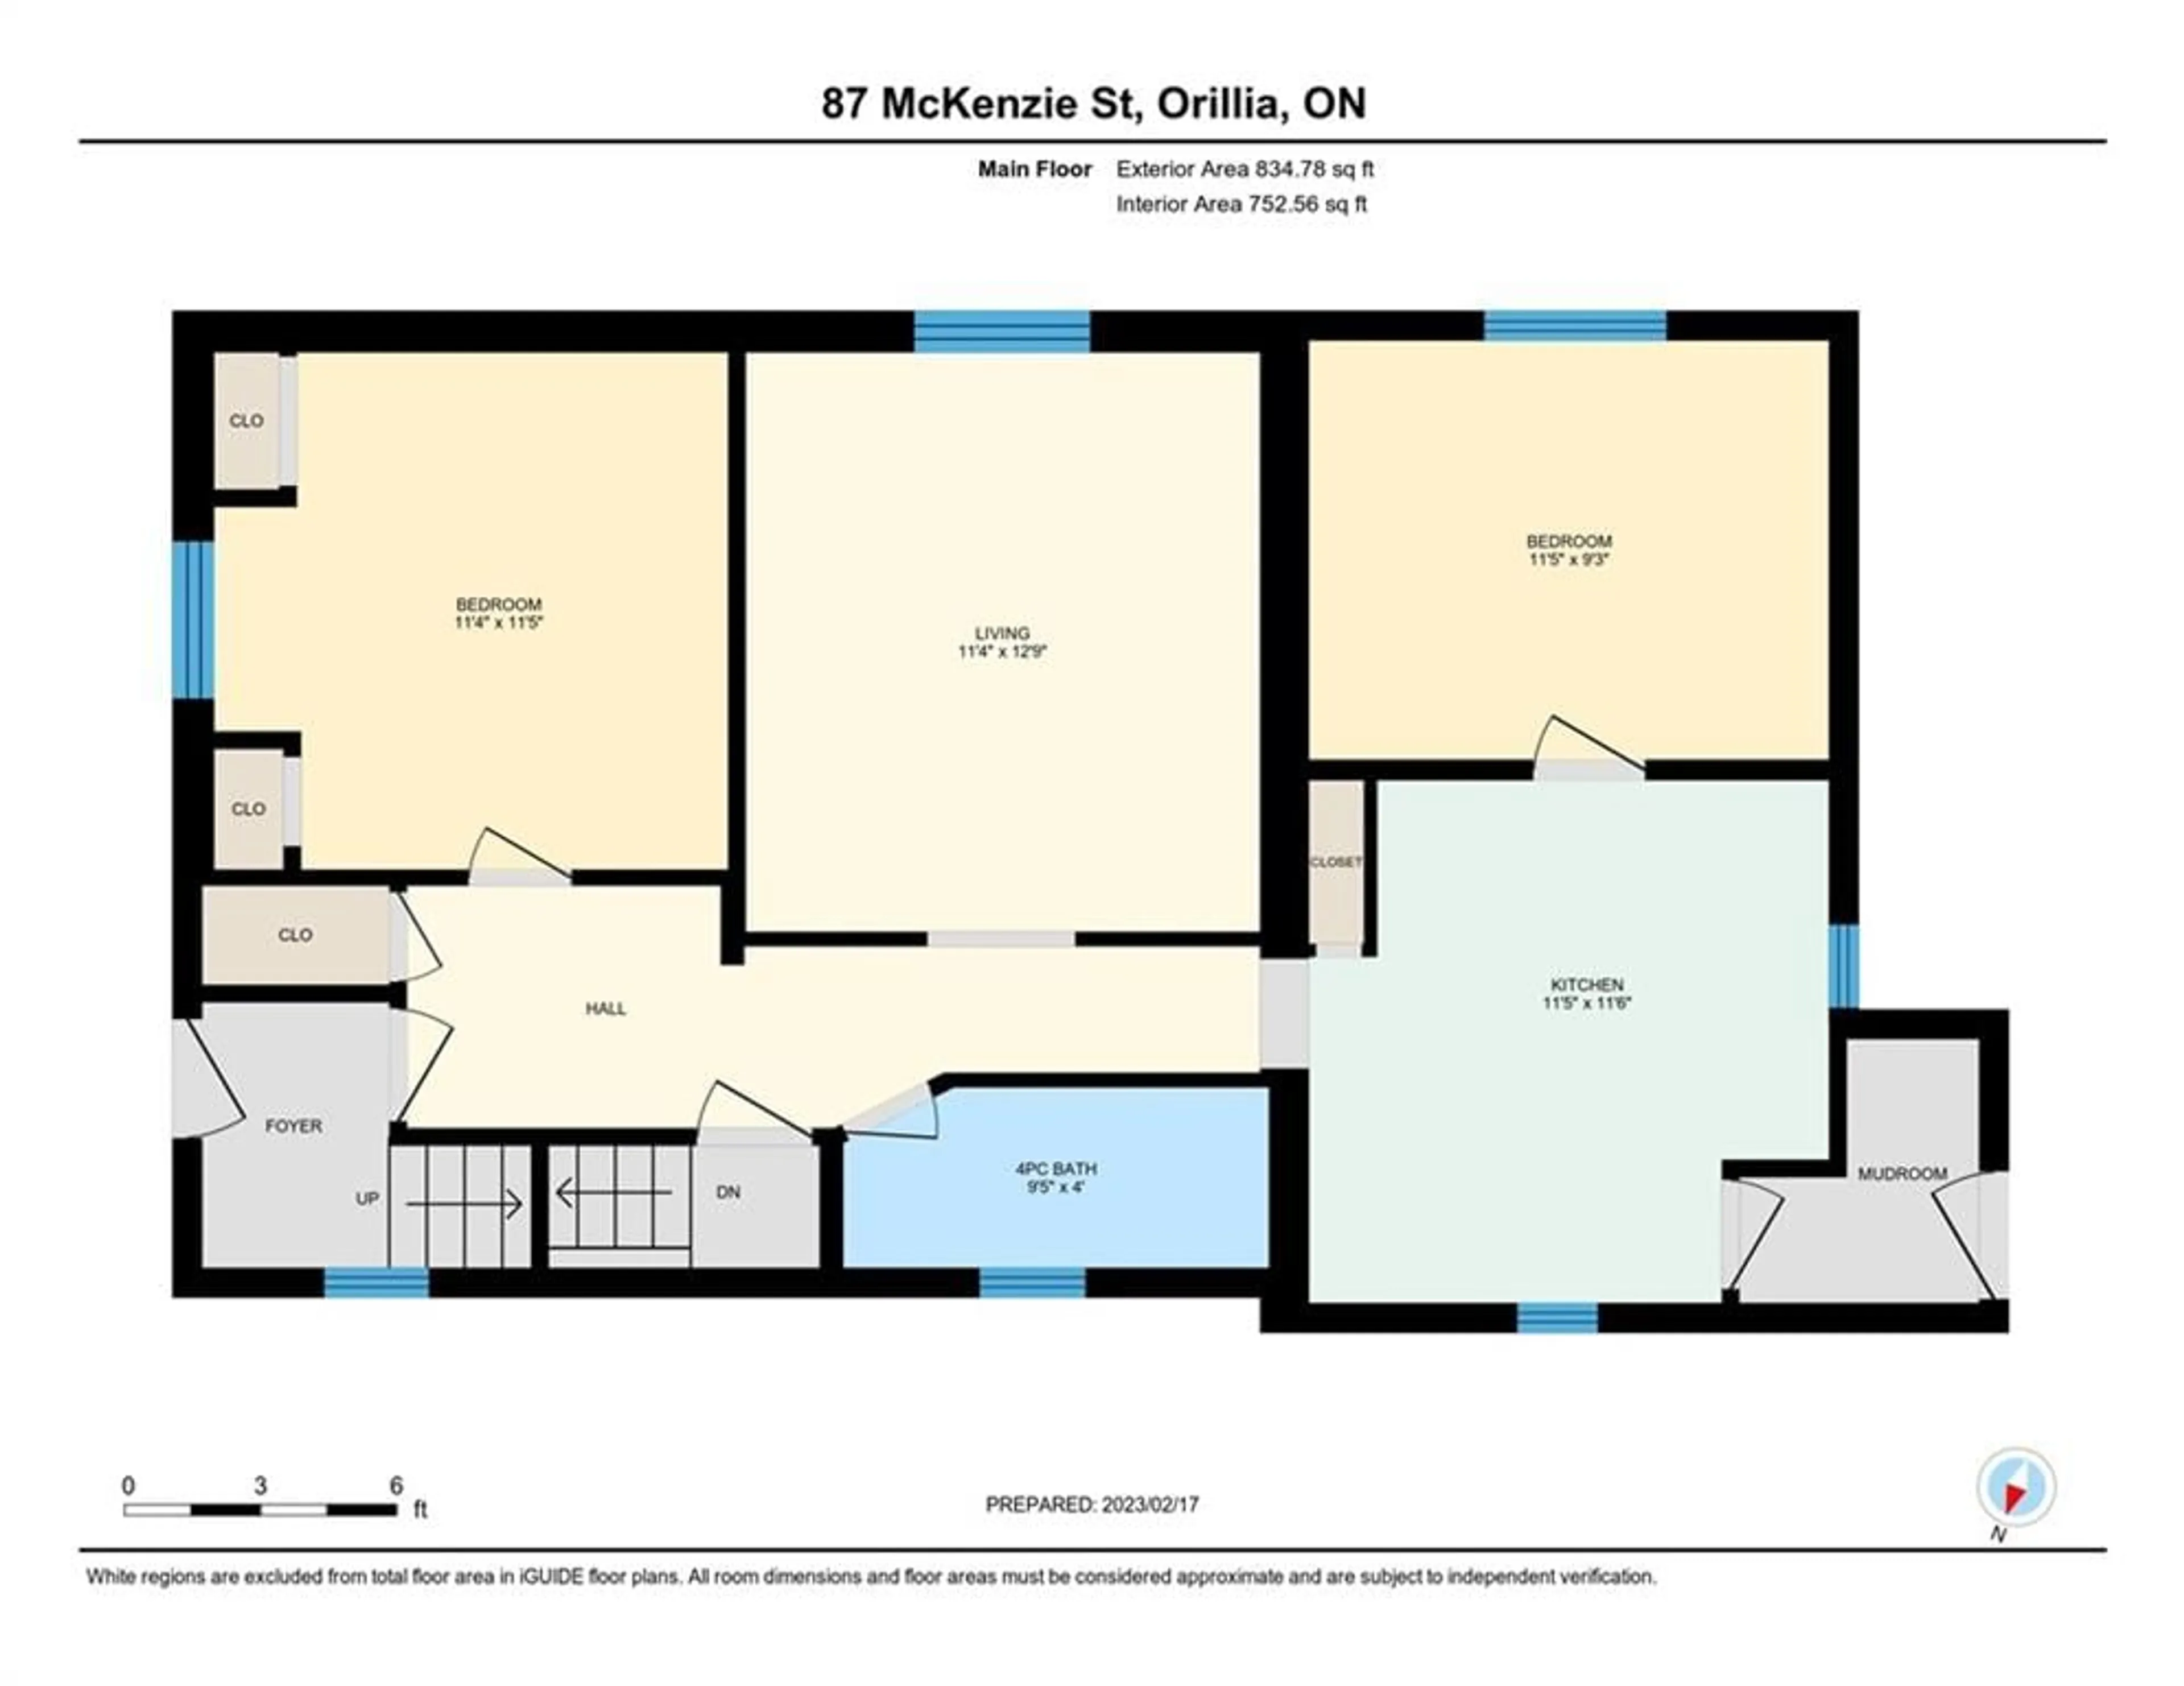 Floor plan for 87 Mckenzie St, Orillia Ontario L3V 6H7